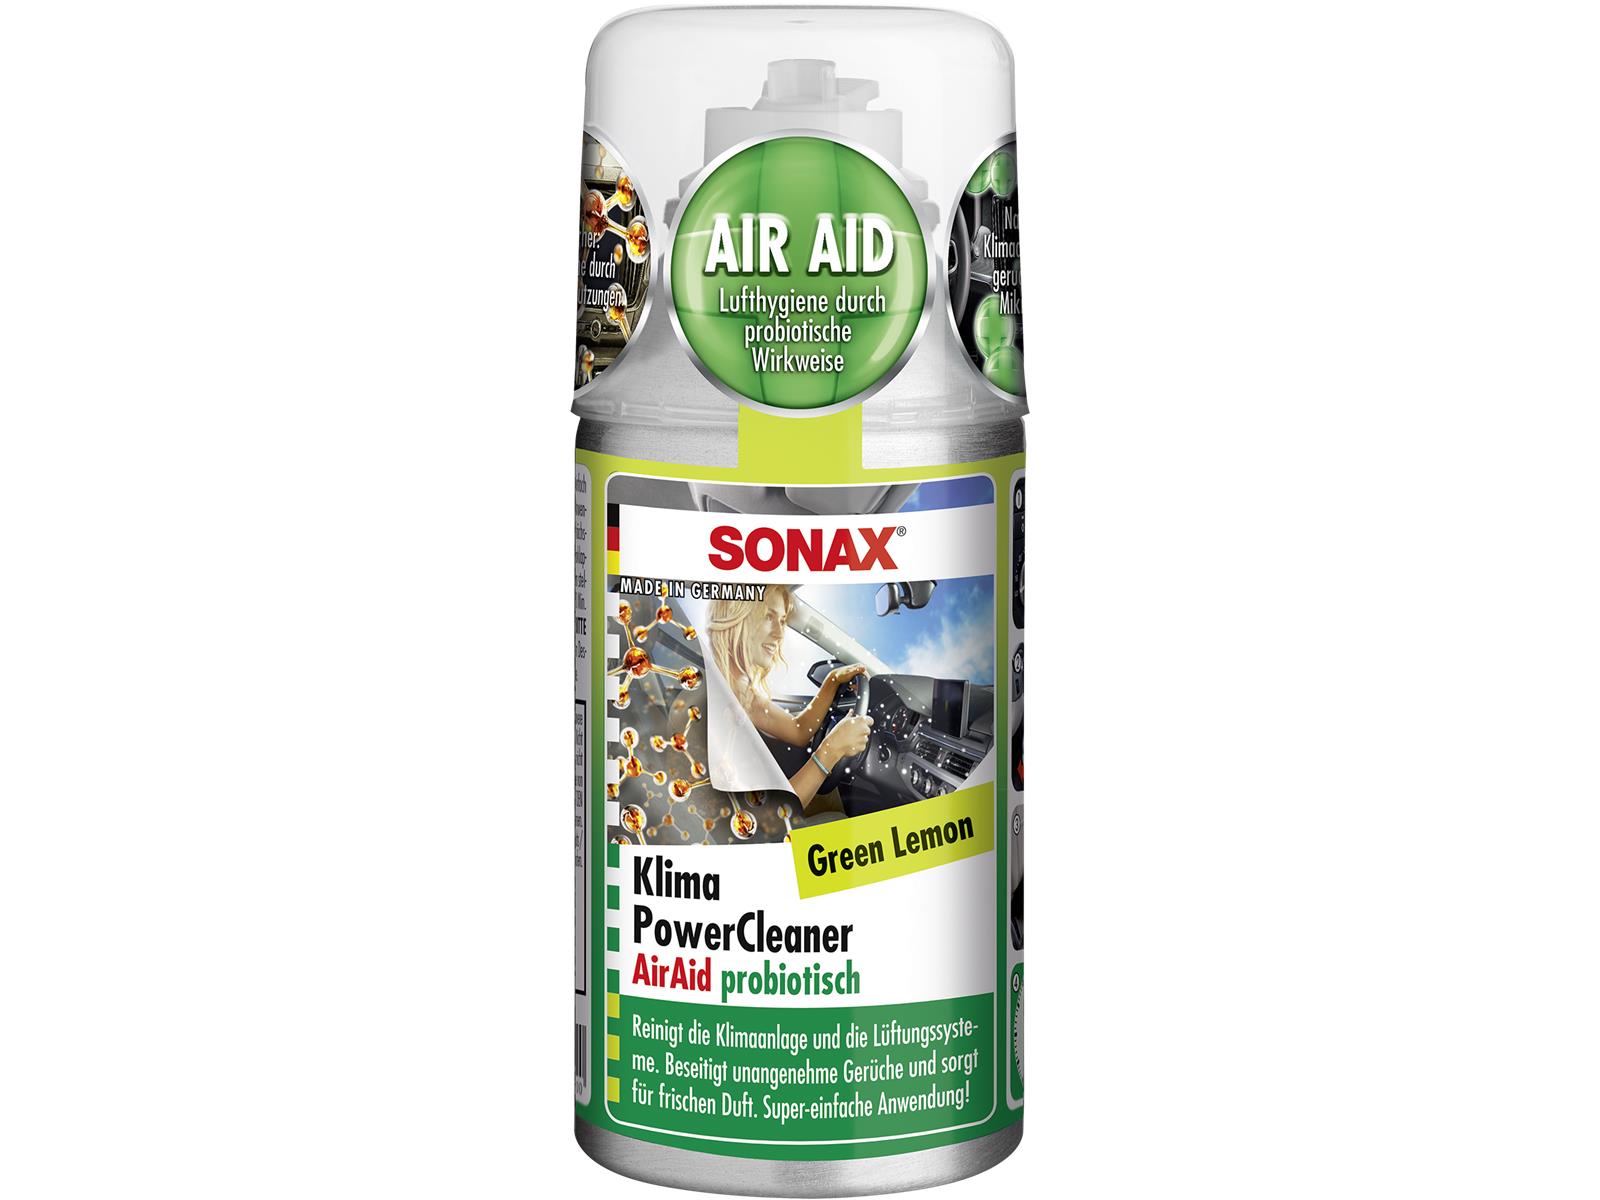 SONAX 03234000 KlimaPowerCleaner AirAid probiotisch Green Lemon 100 ml